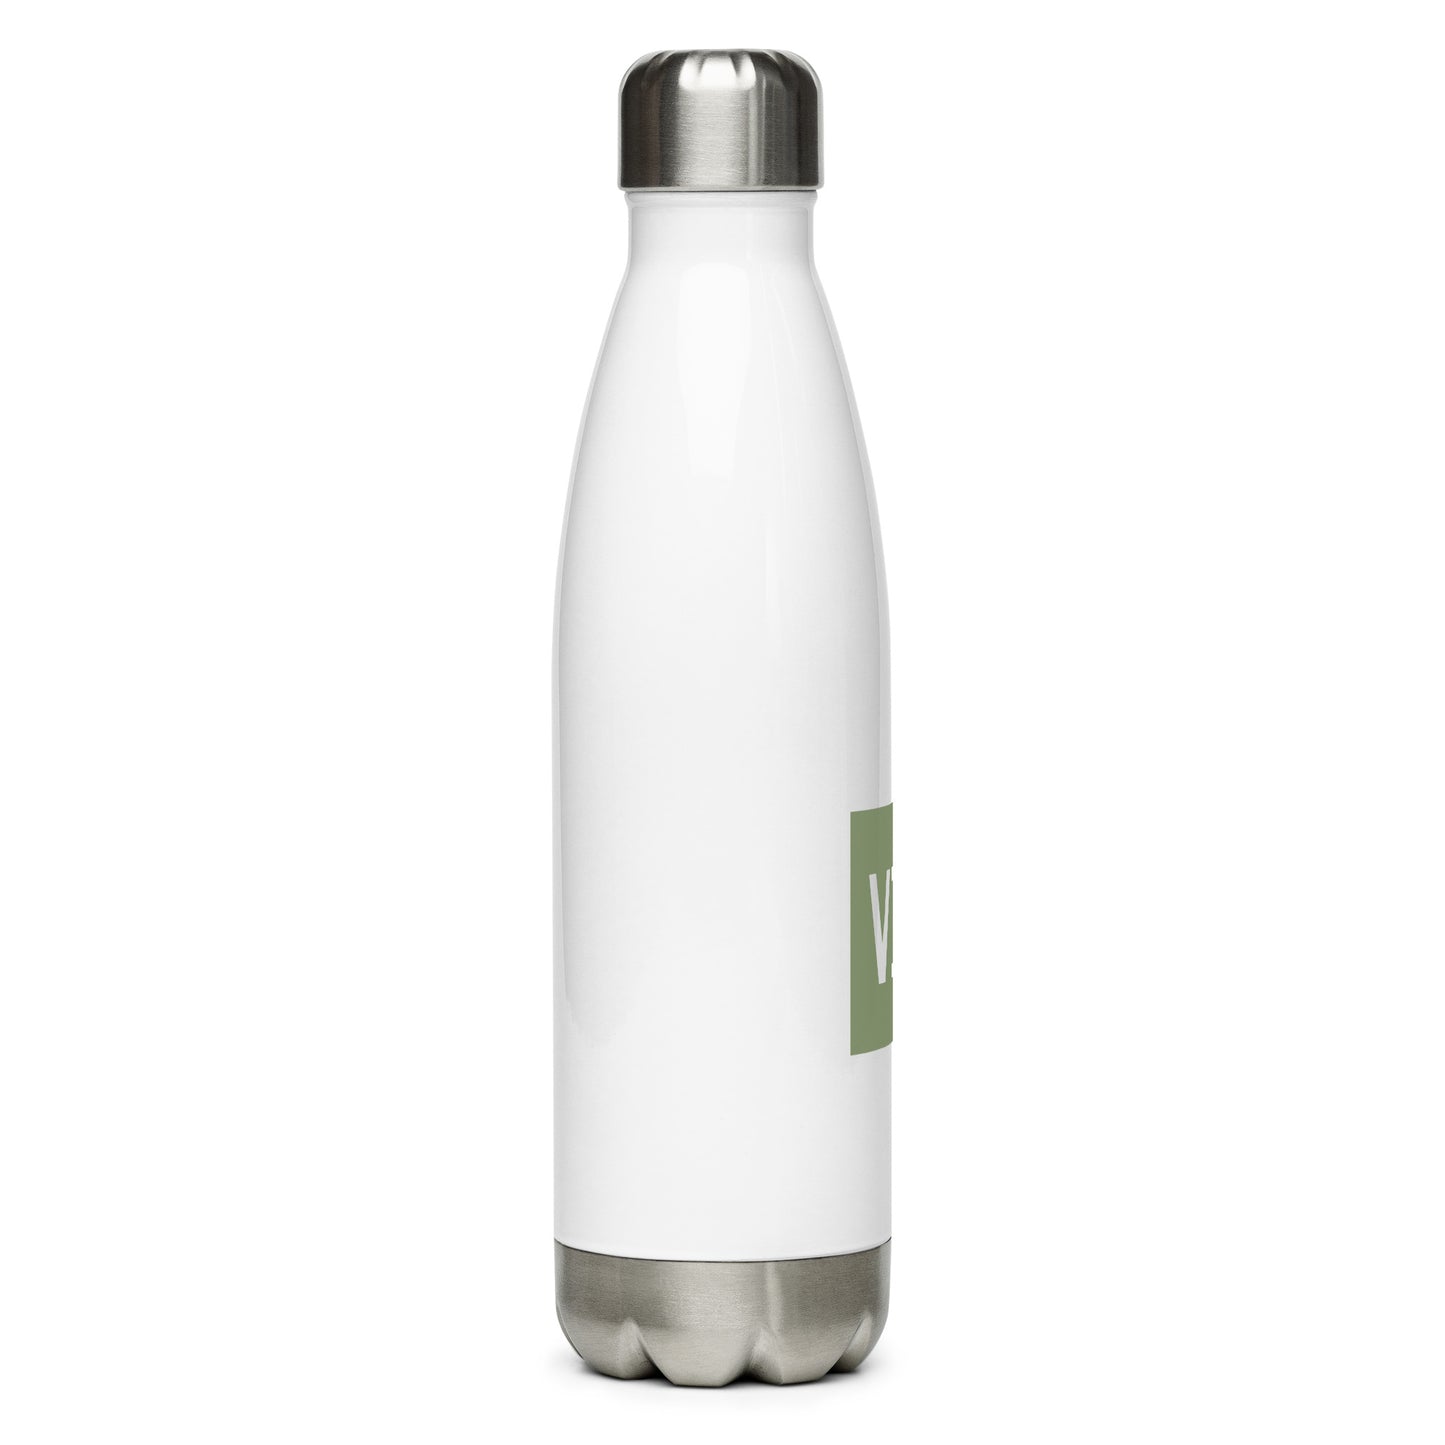 Aviation Gift Water Bottle - Camo Green • VIE Vienna • YHM Designs - Image 07